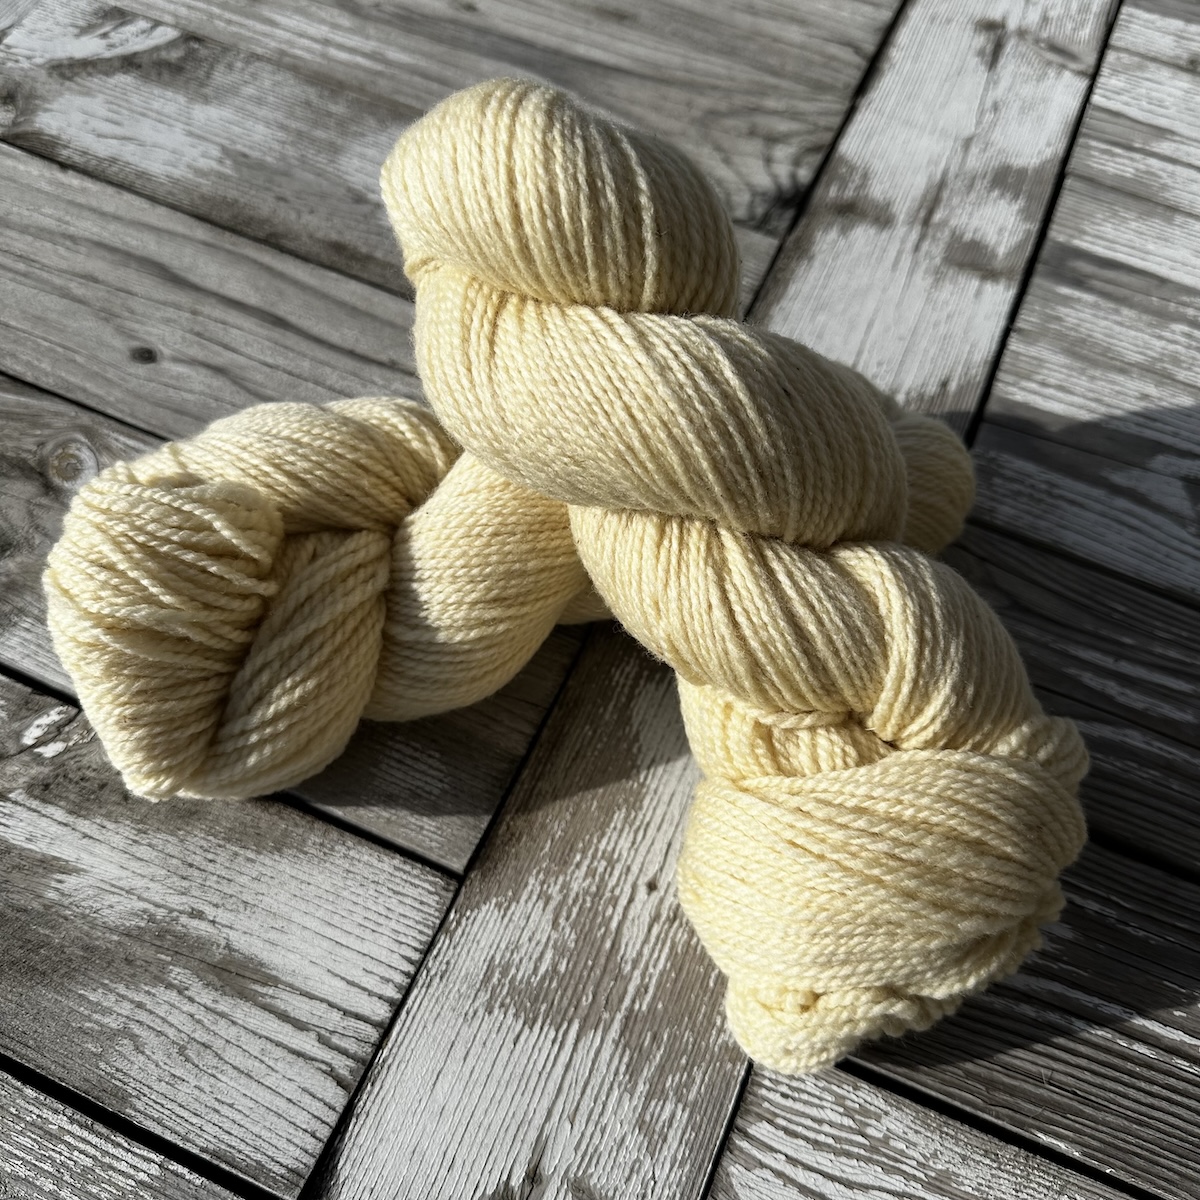 Twisted Oaks, 100% Corriedale Wool Yarn, undyed 2 ply DK